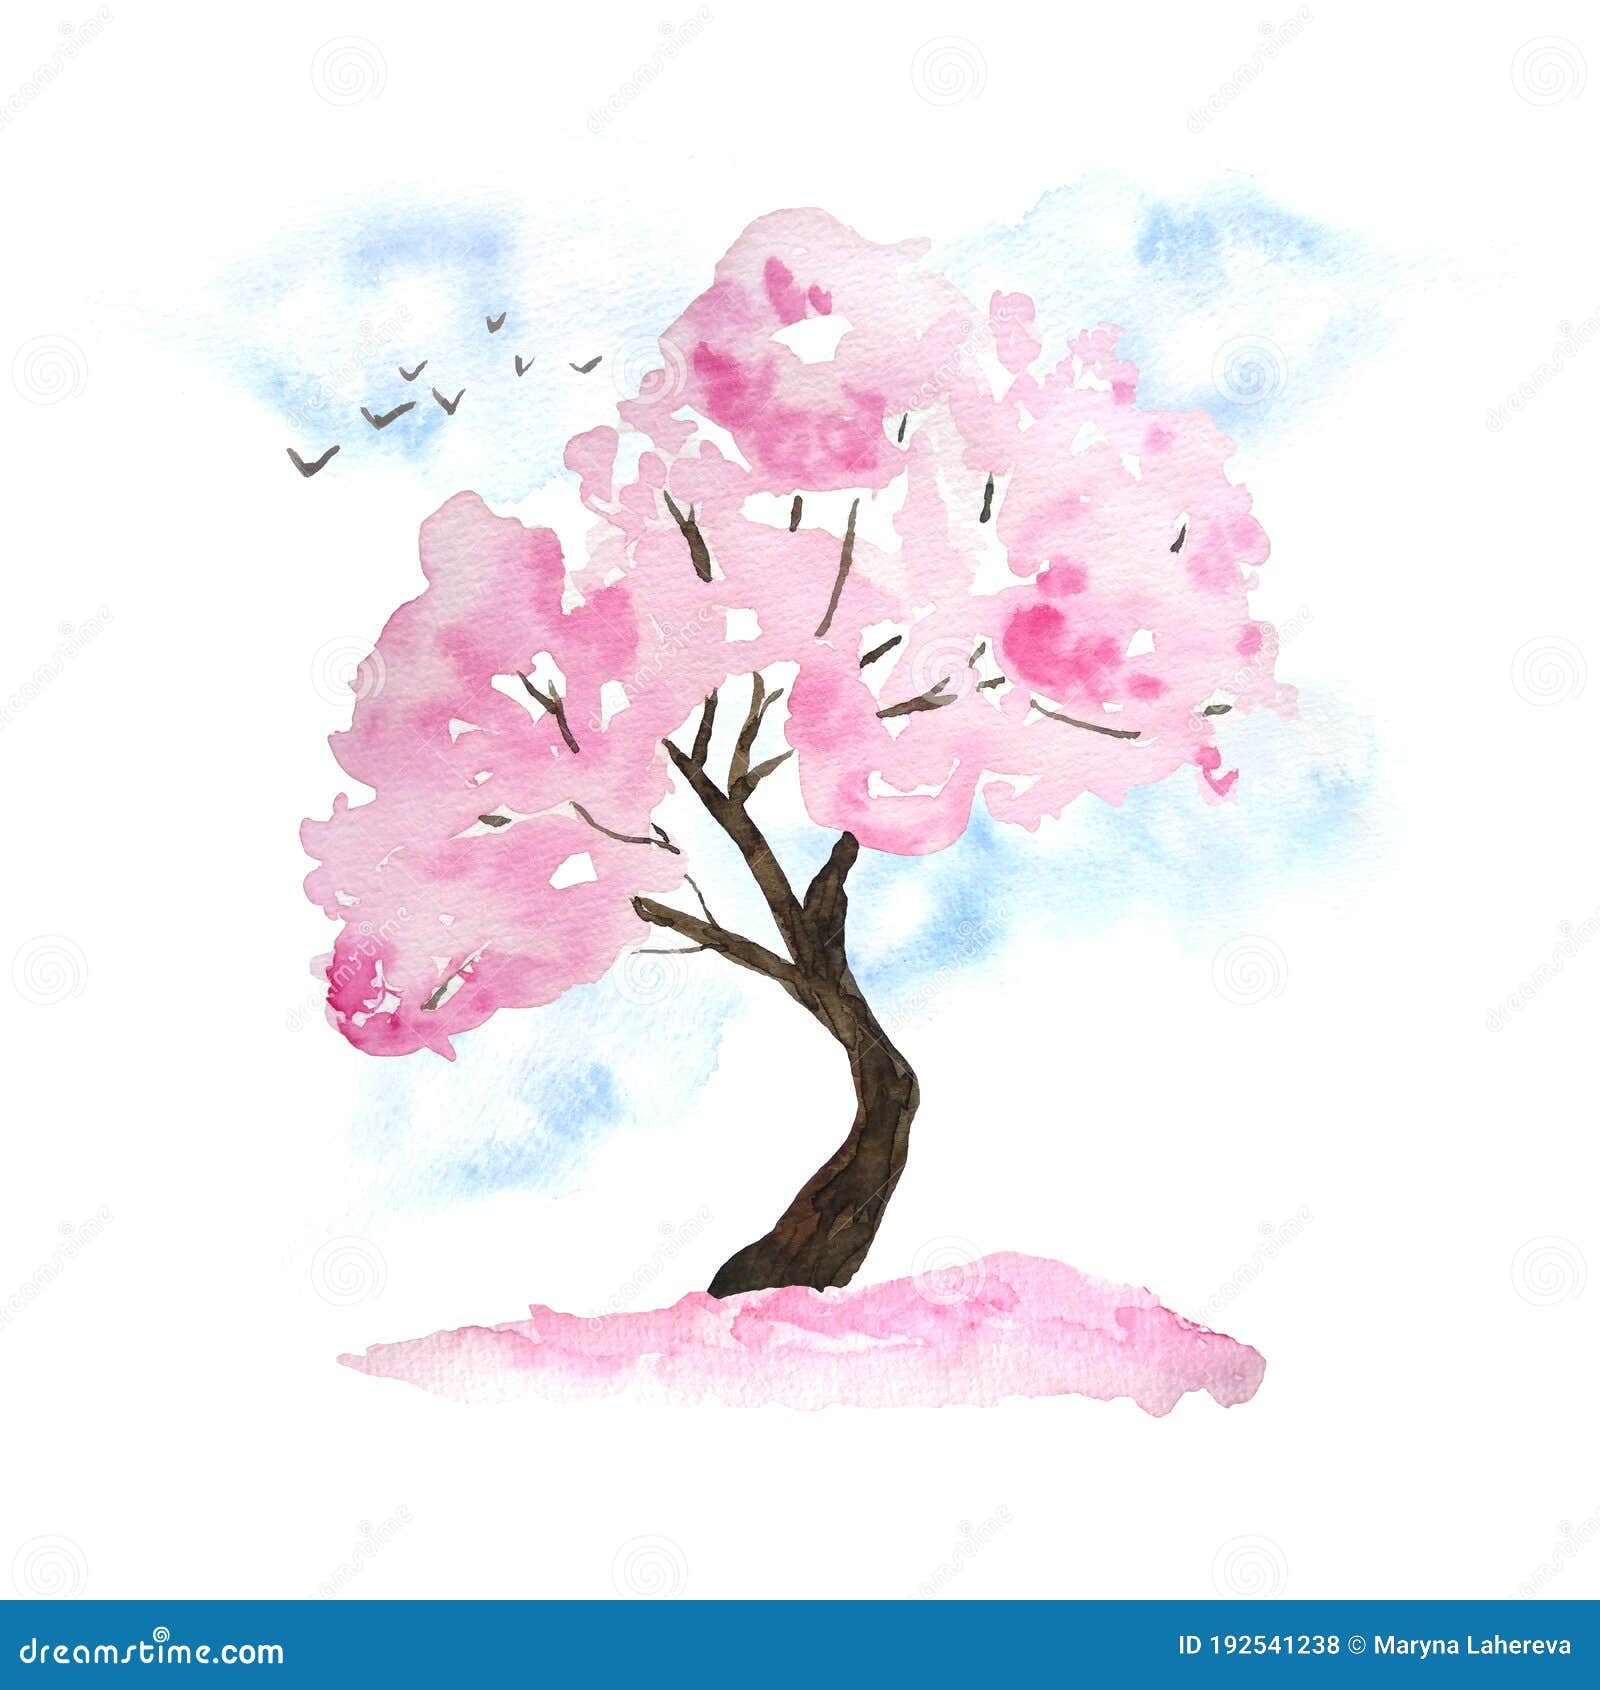 Acuarela Dibujo a Mano Ilustración De Diseño Del árbol De Sakura De Cerezo  Rosa En Flor Flor Flores Pájaros Cielo Caídos Pétalos Foto de archivo -  Imagen de planta, tokio: 192541238